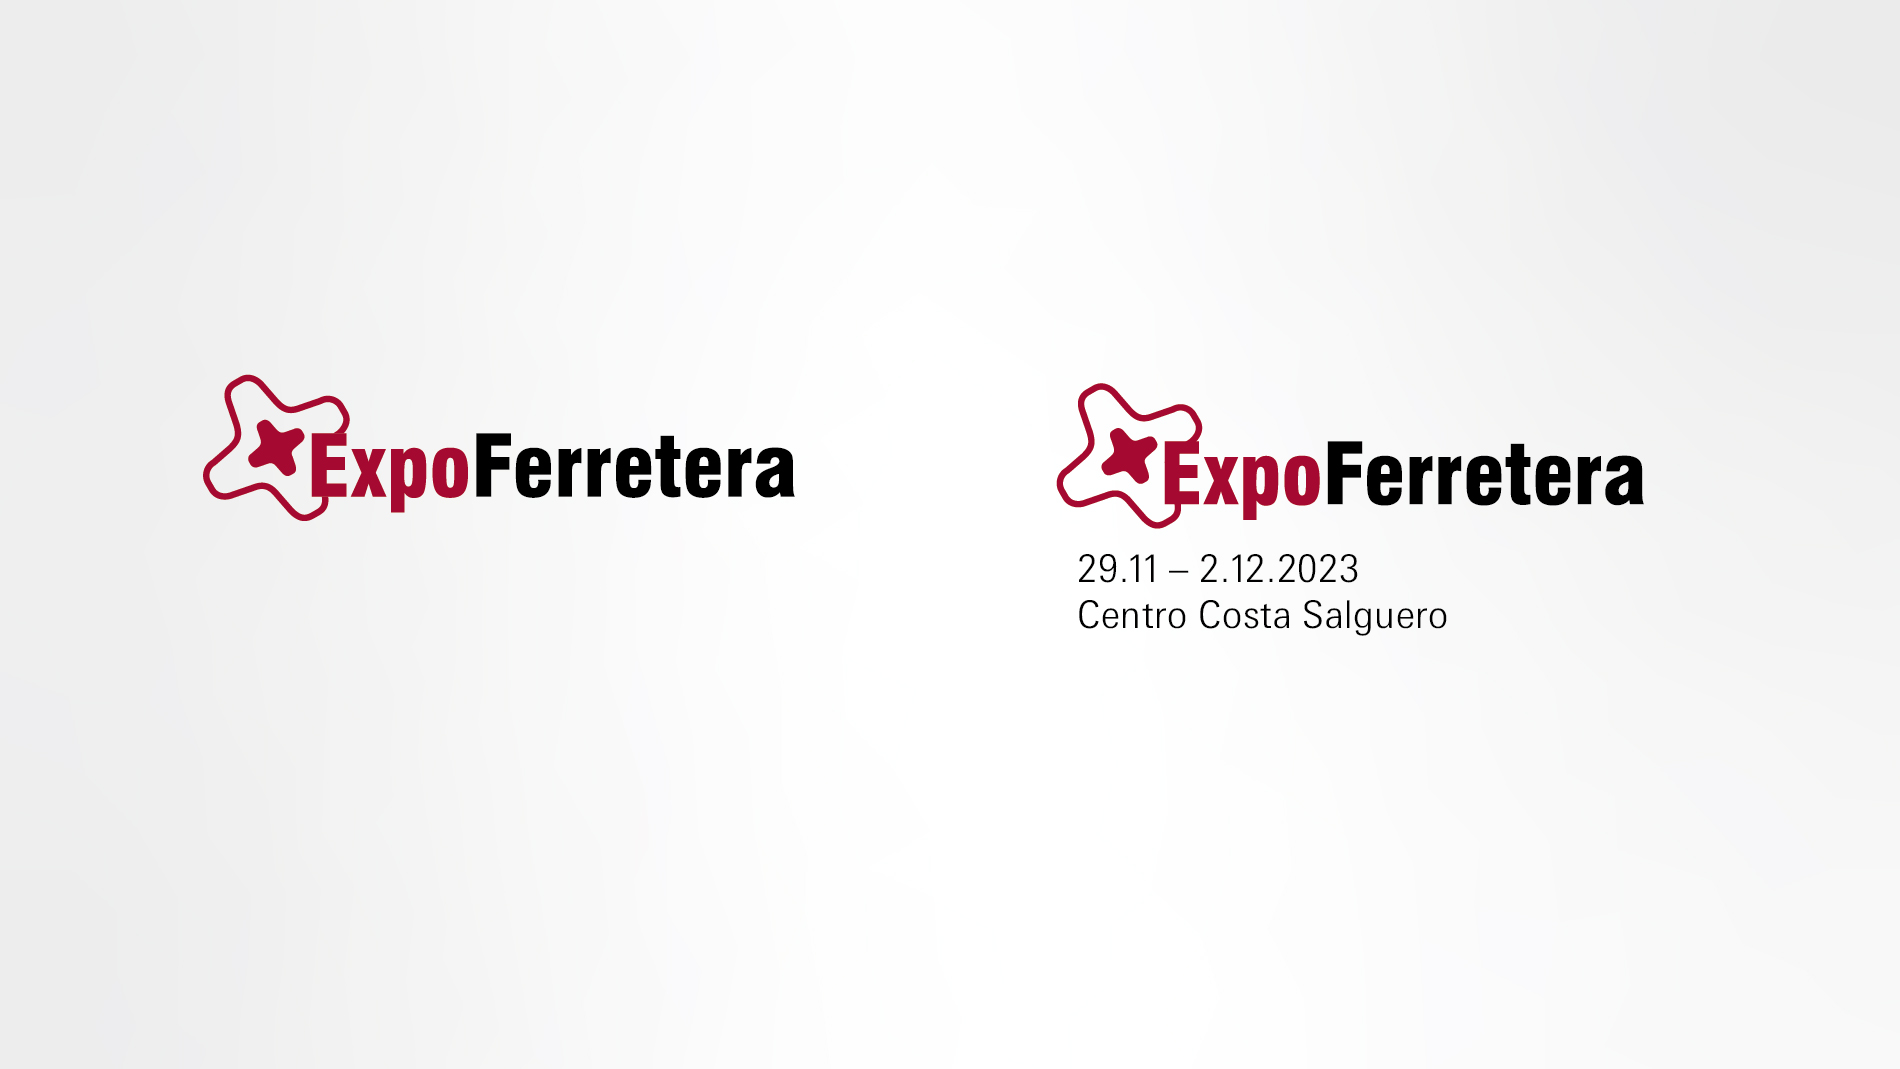 ExpoFerretera: Logos